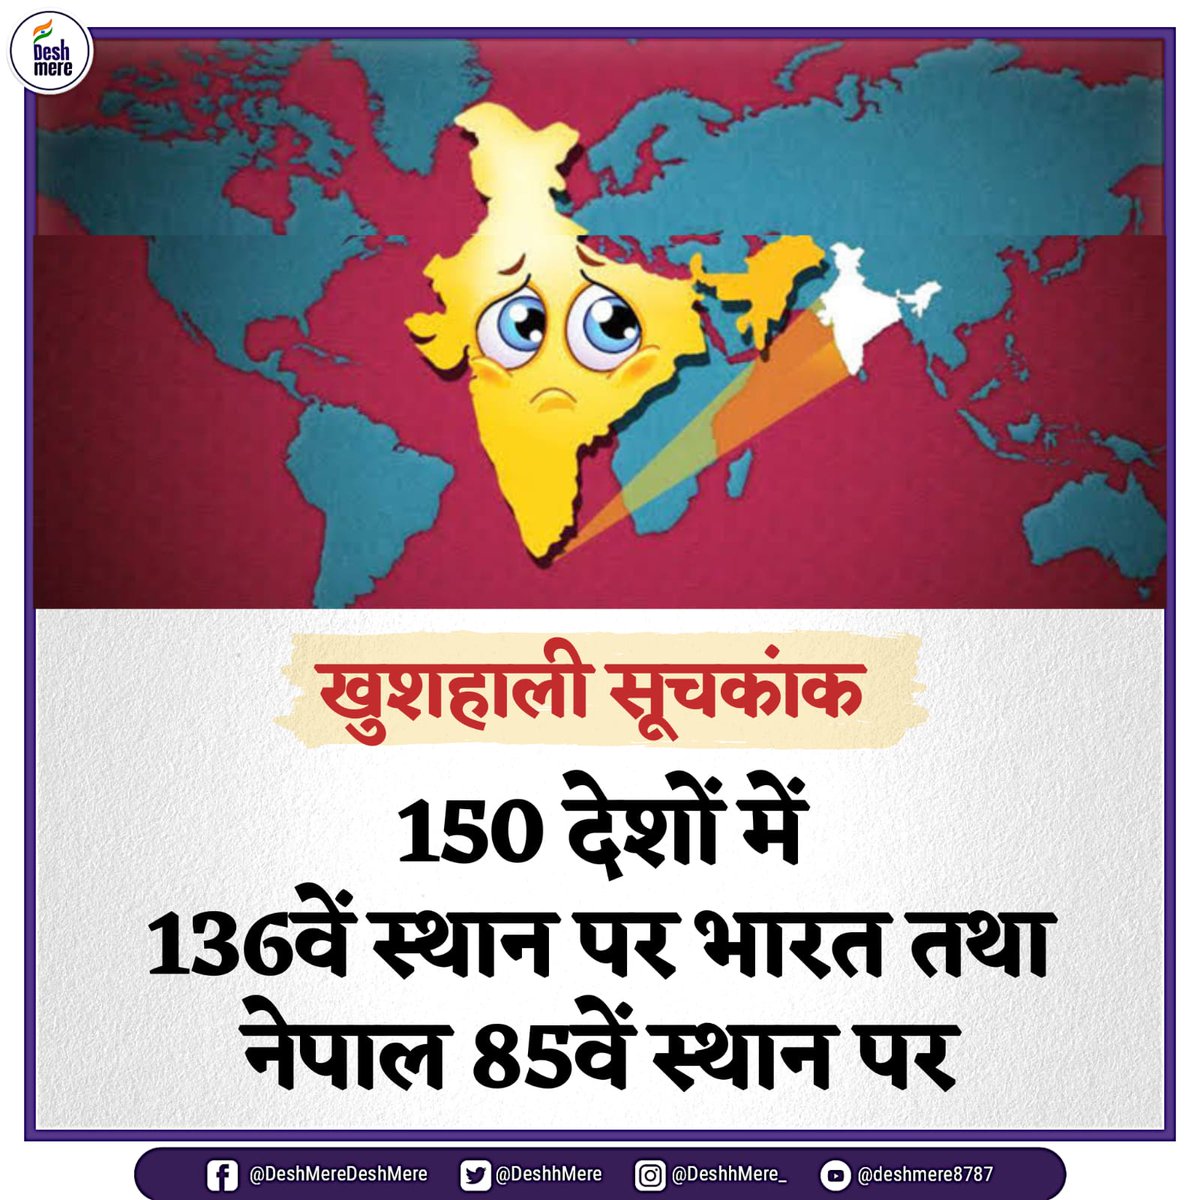 खुशहाली सूचकांक 

150 देशों में 136वें स्थान पर भारत तथा नेपाल 85वें स्थान पर

#WorldHappinessReport #HappinessIndex #India